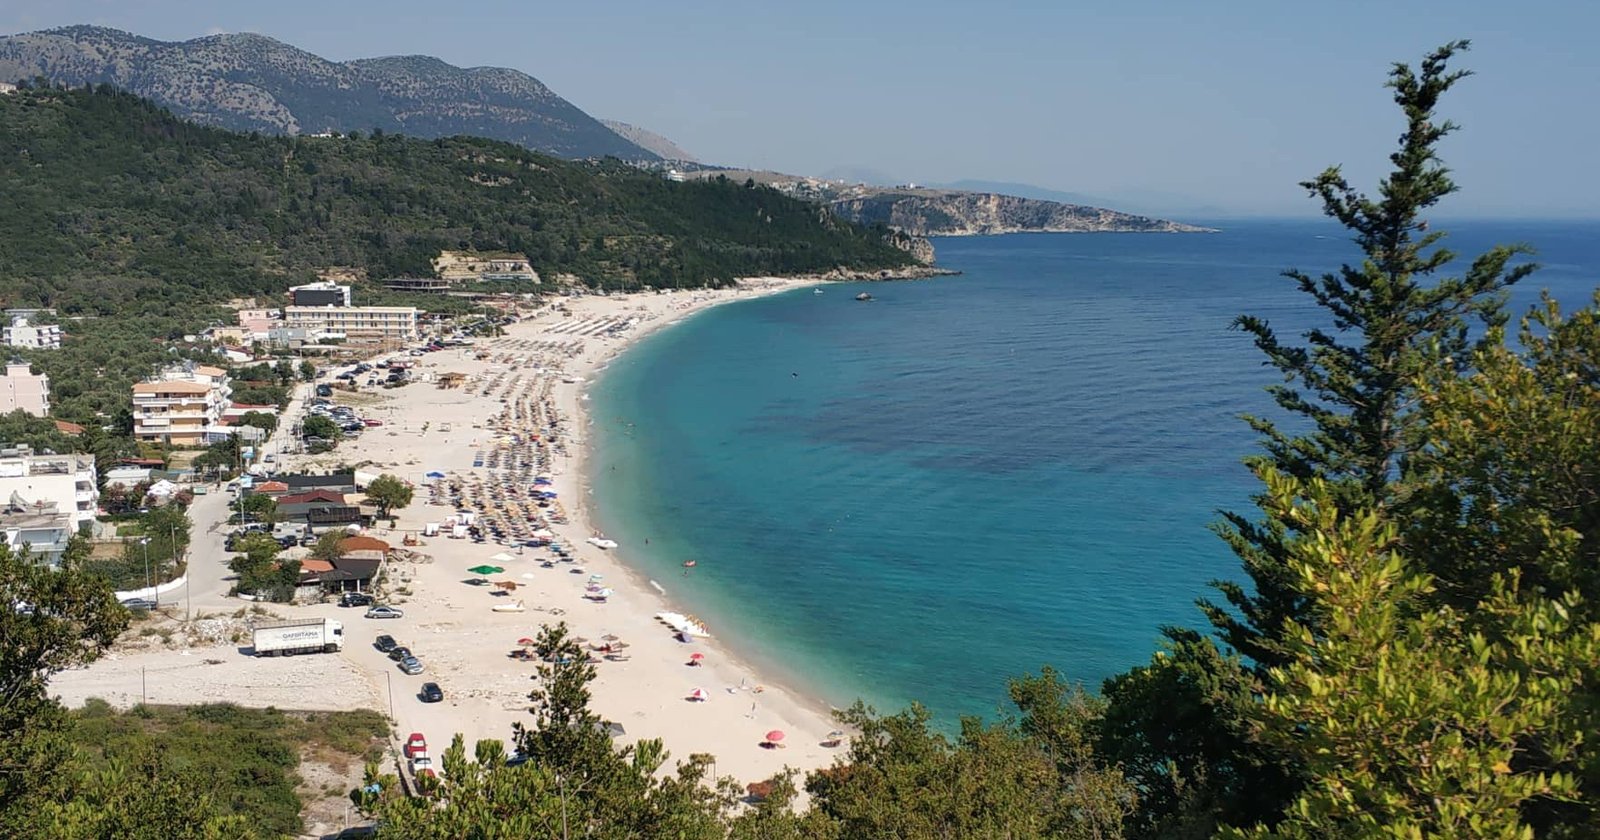 В Албании две семьи не поделили пляж и устроили перестрелку: есть погибшие и раненые